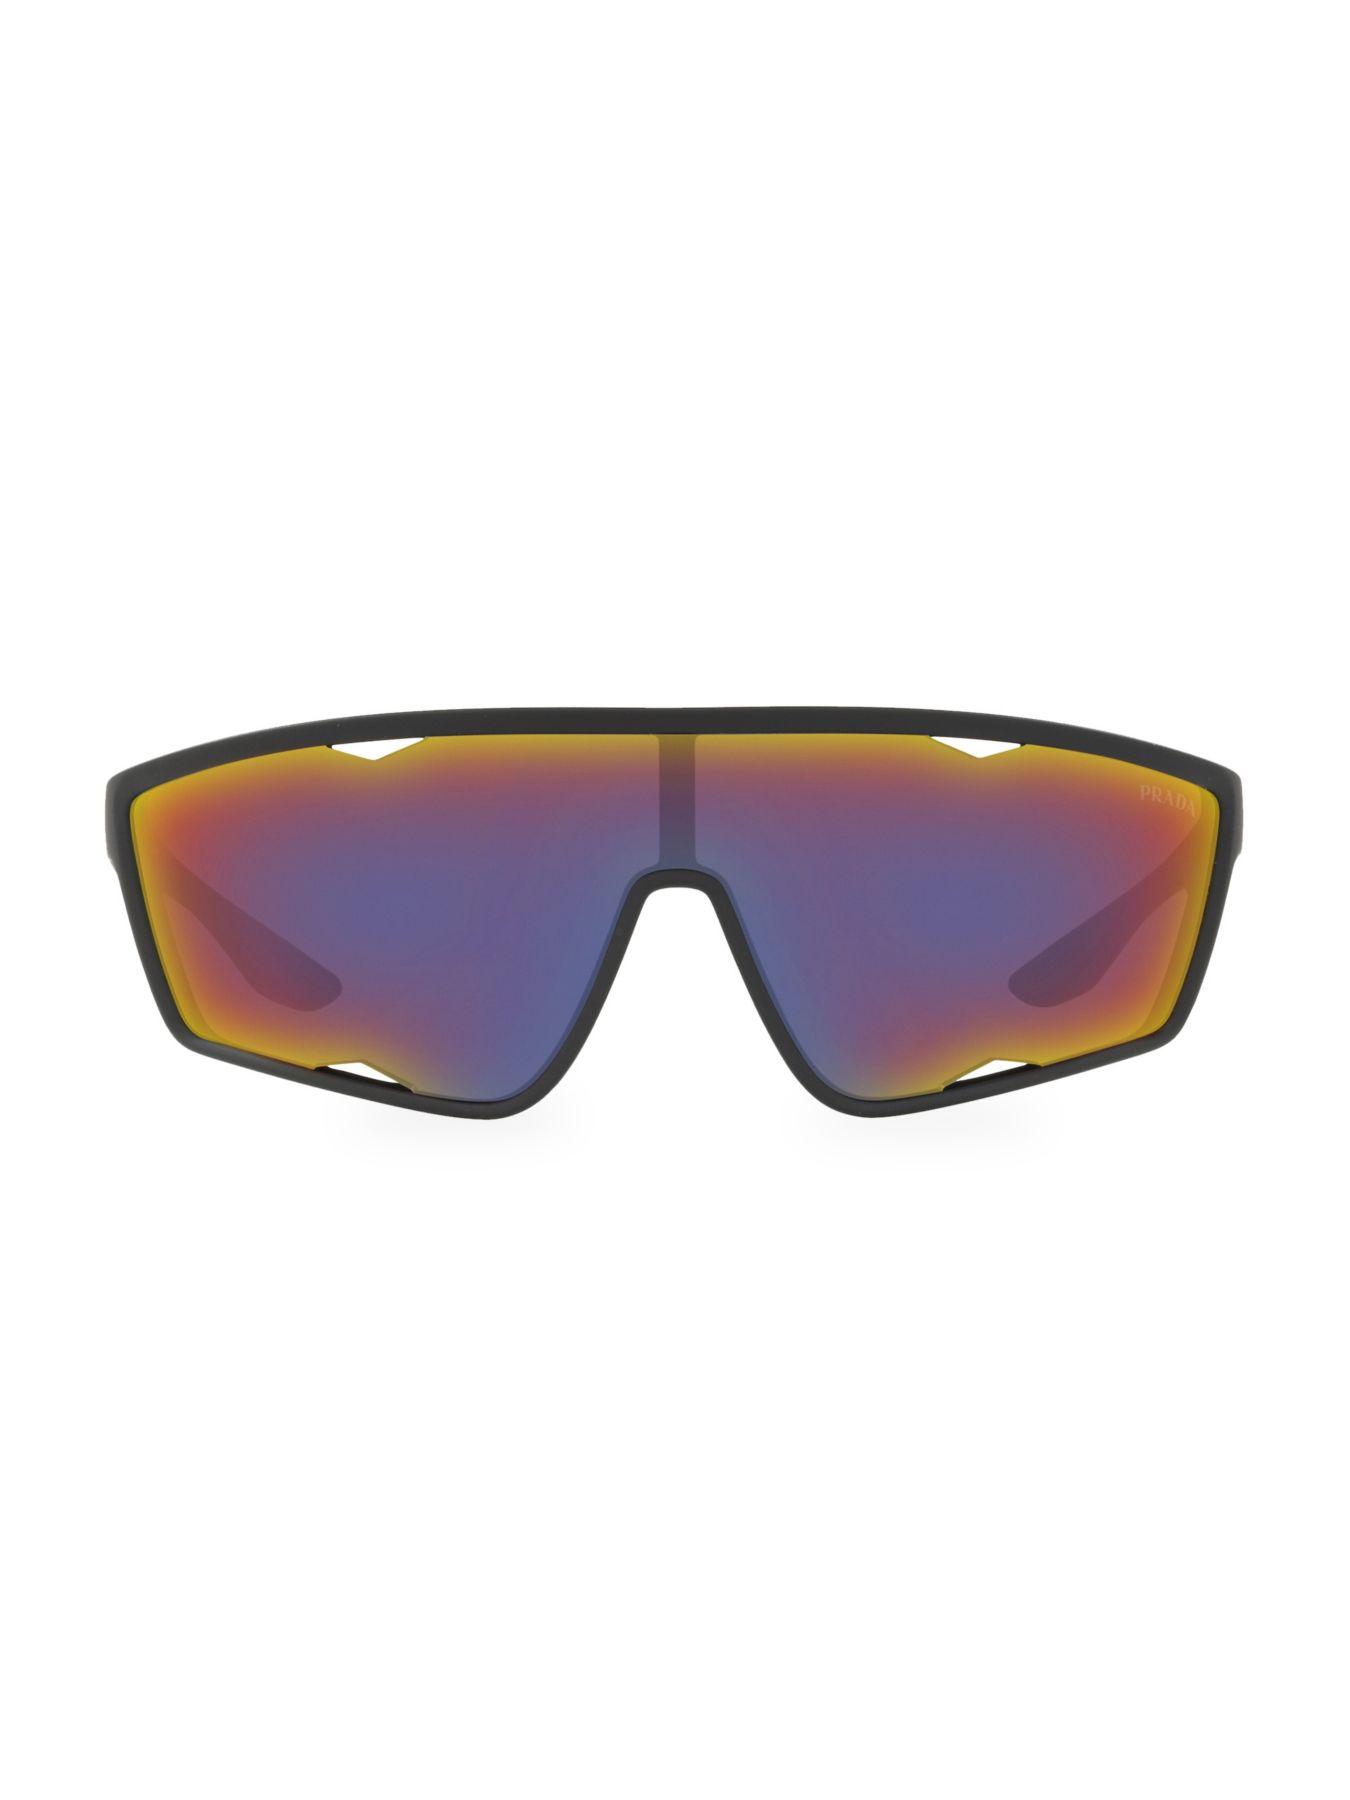 Prada Linea Rossa 140mm Mirrored Shield Sunglasses in Purple for Men - Lyst